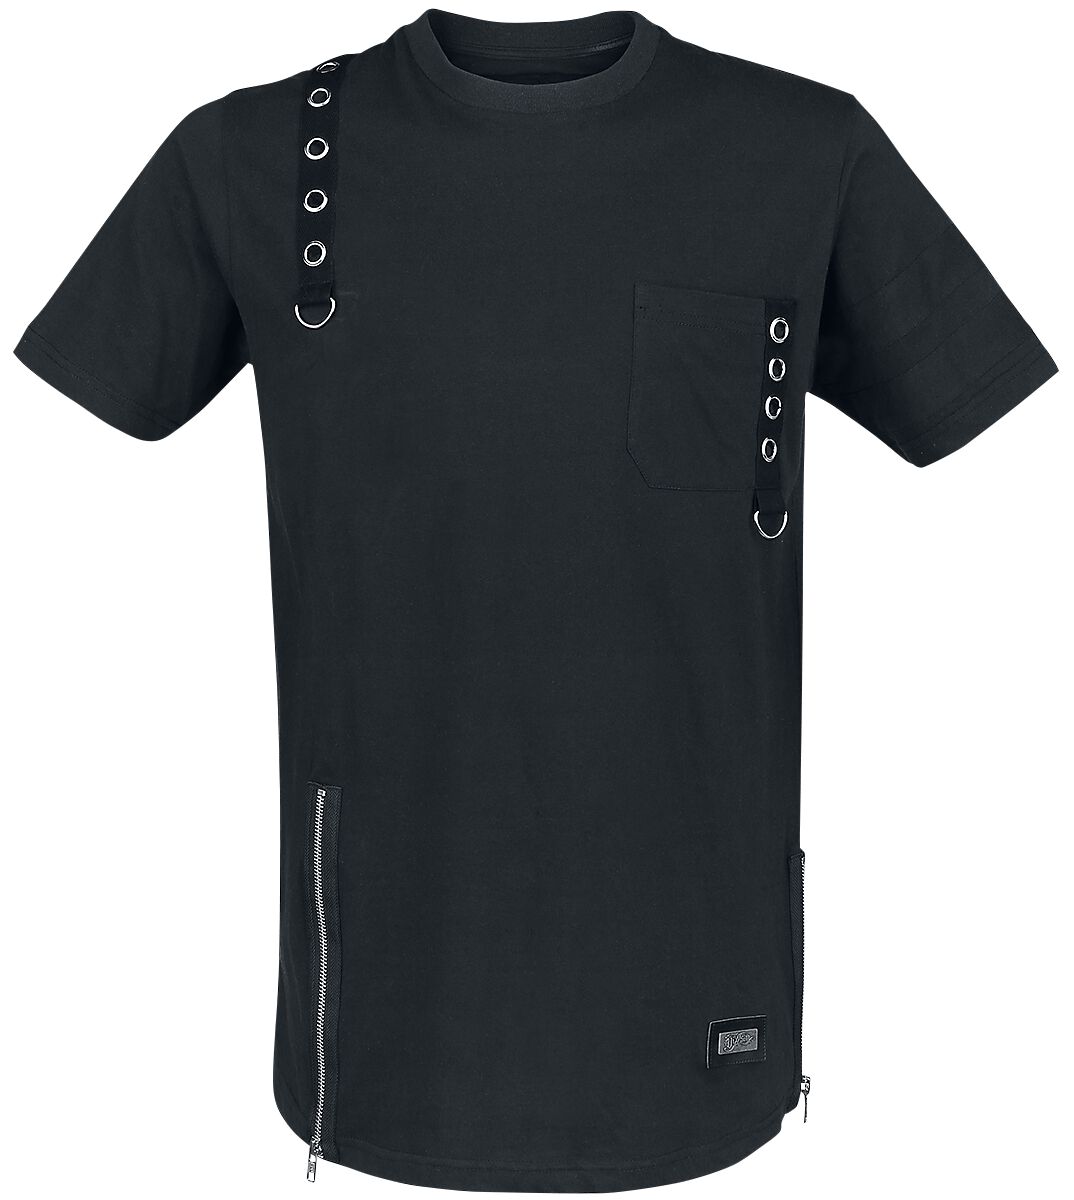 Vixxsin - Gothic T-Shirt - Jash Top - S bis 4XL - für Männer - Größe M - schwarz